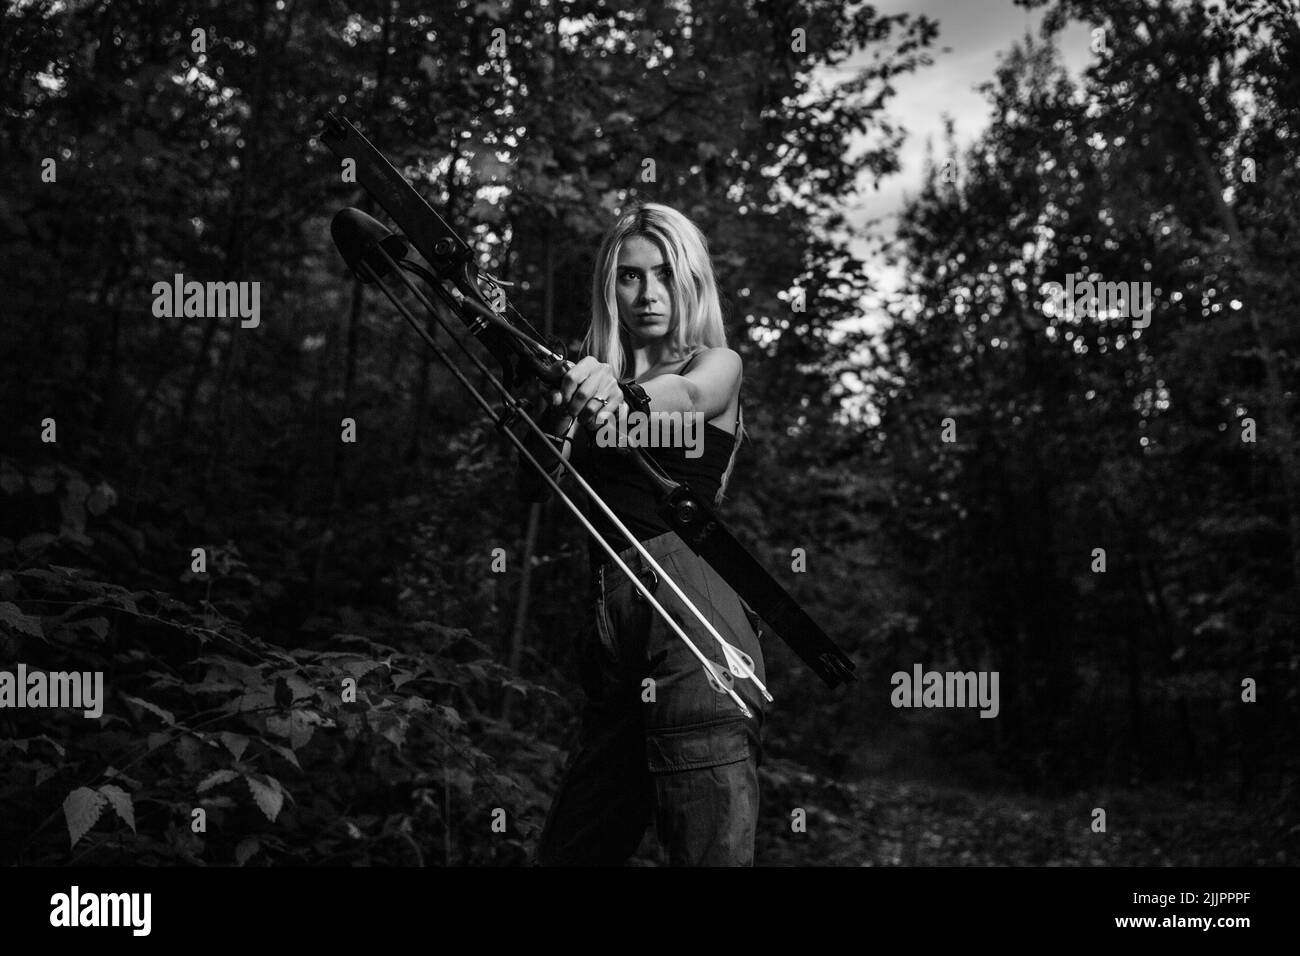 Un ritratto in scala di grigi di una donna bionda caucasica che tiene la freccia e la lancia in una foresta Foto Stock